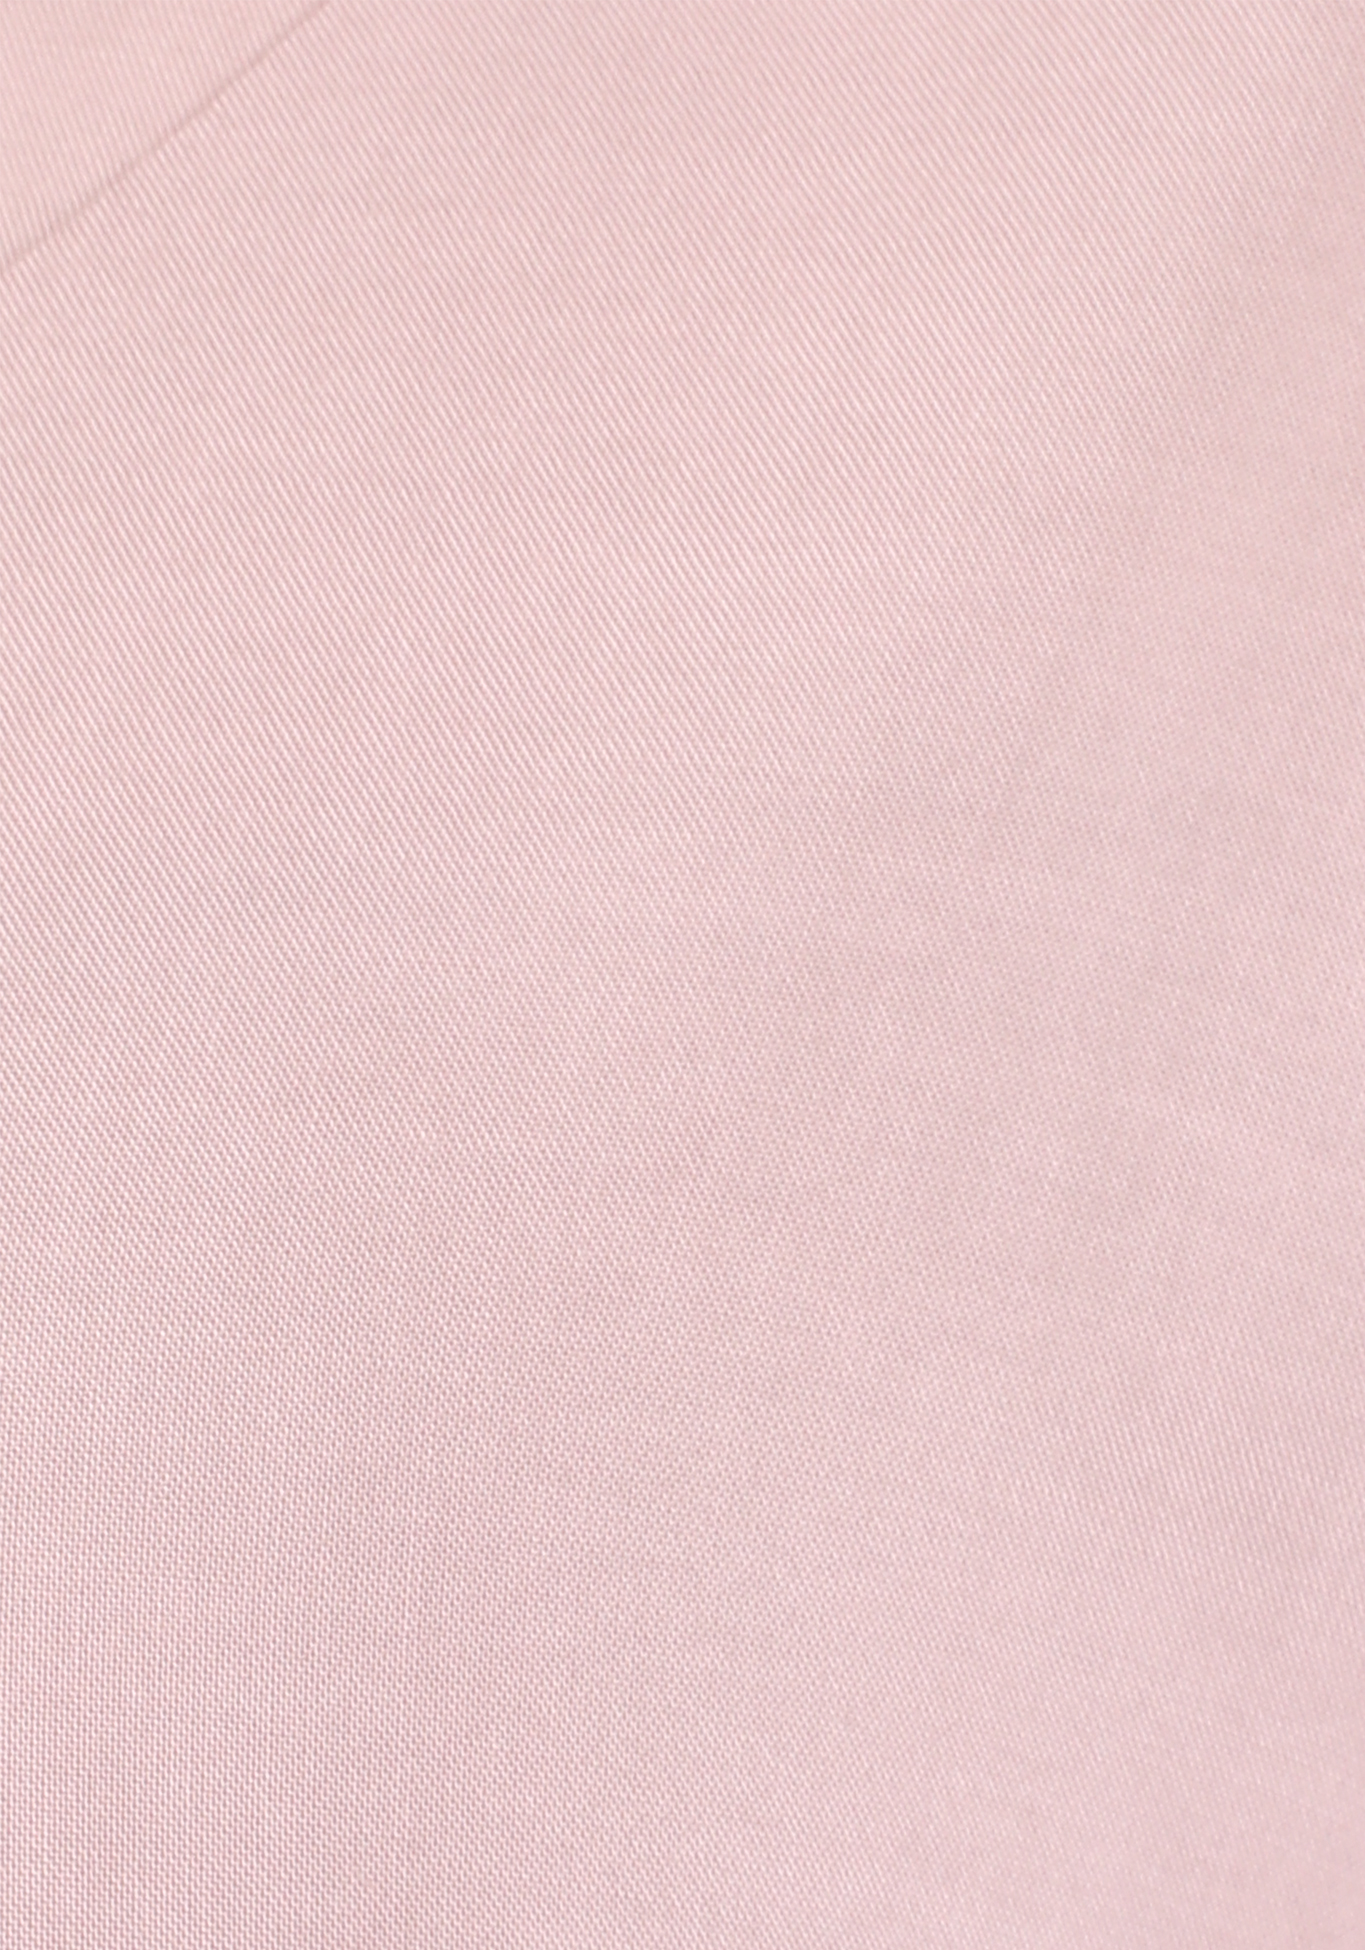 Блузка с V-образным вырезом, свободного кроя Simple Story, размер 48, цвет белый - фото 4